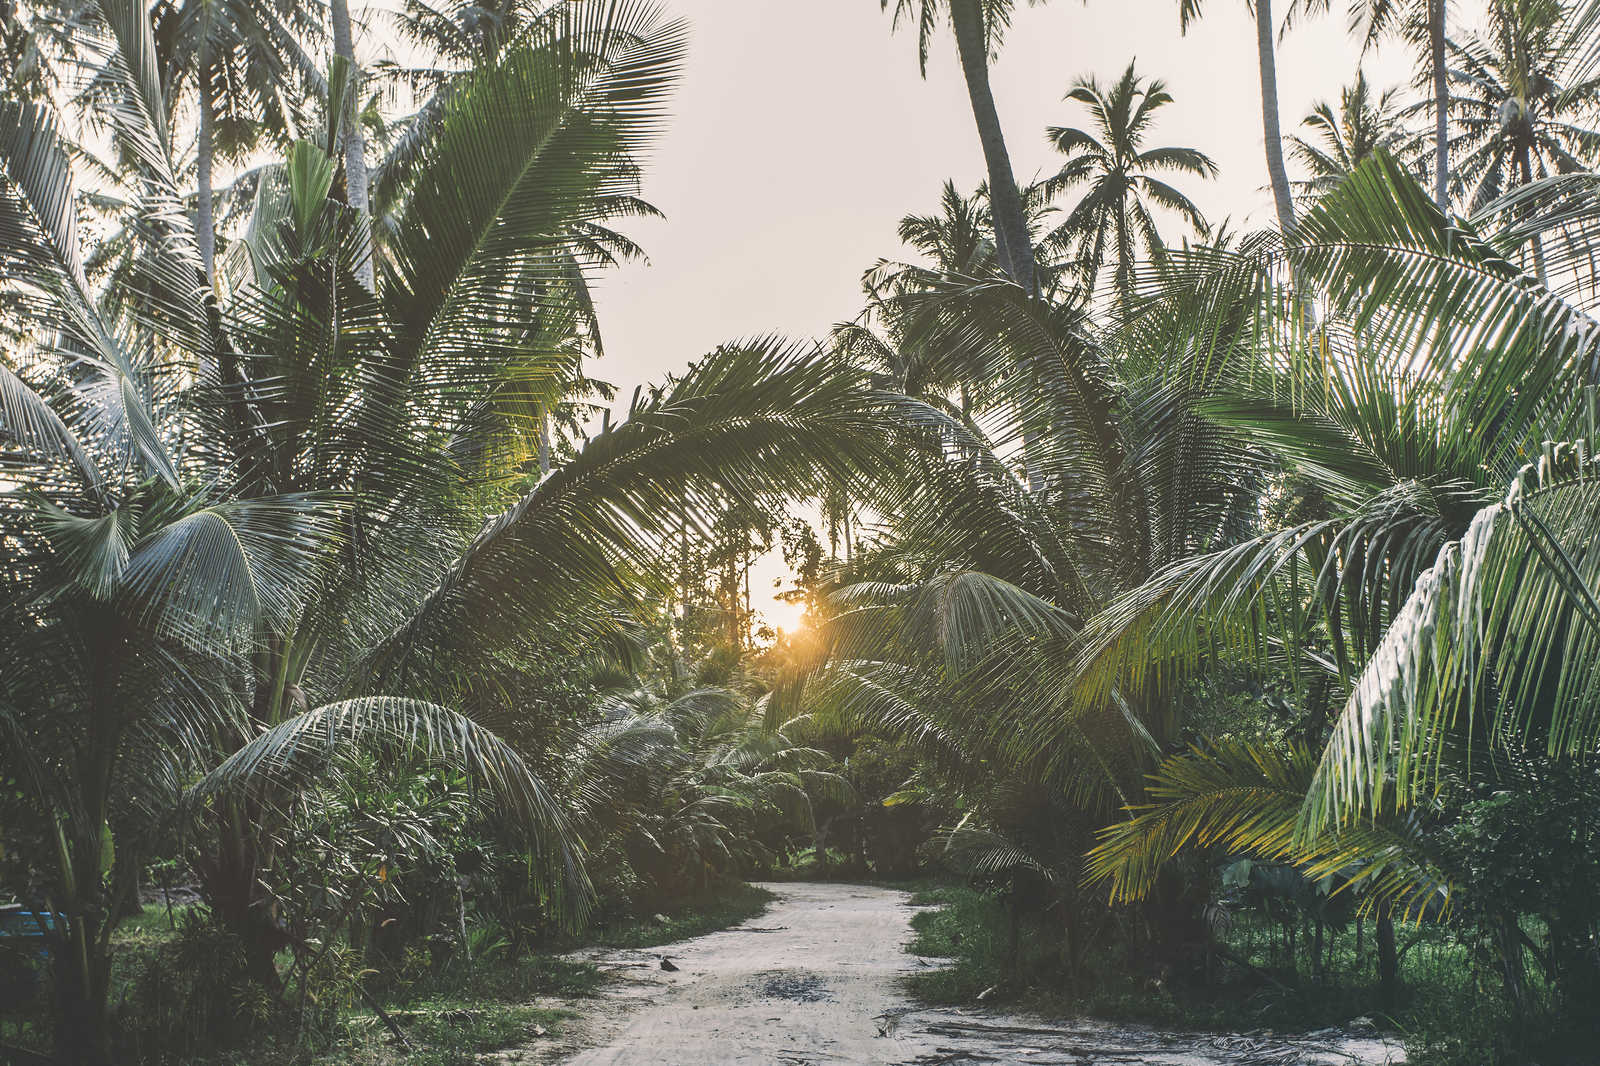             Leinwandbild mit Weg durch einen tropischen Dschungel – 0,90 m x 0,60 m
        